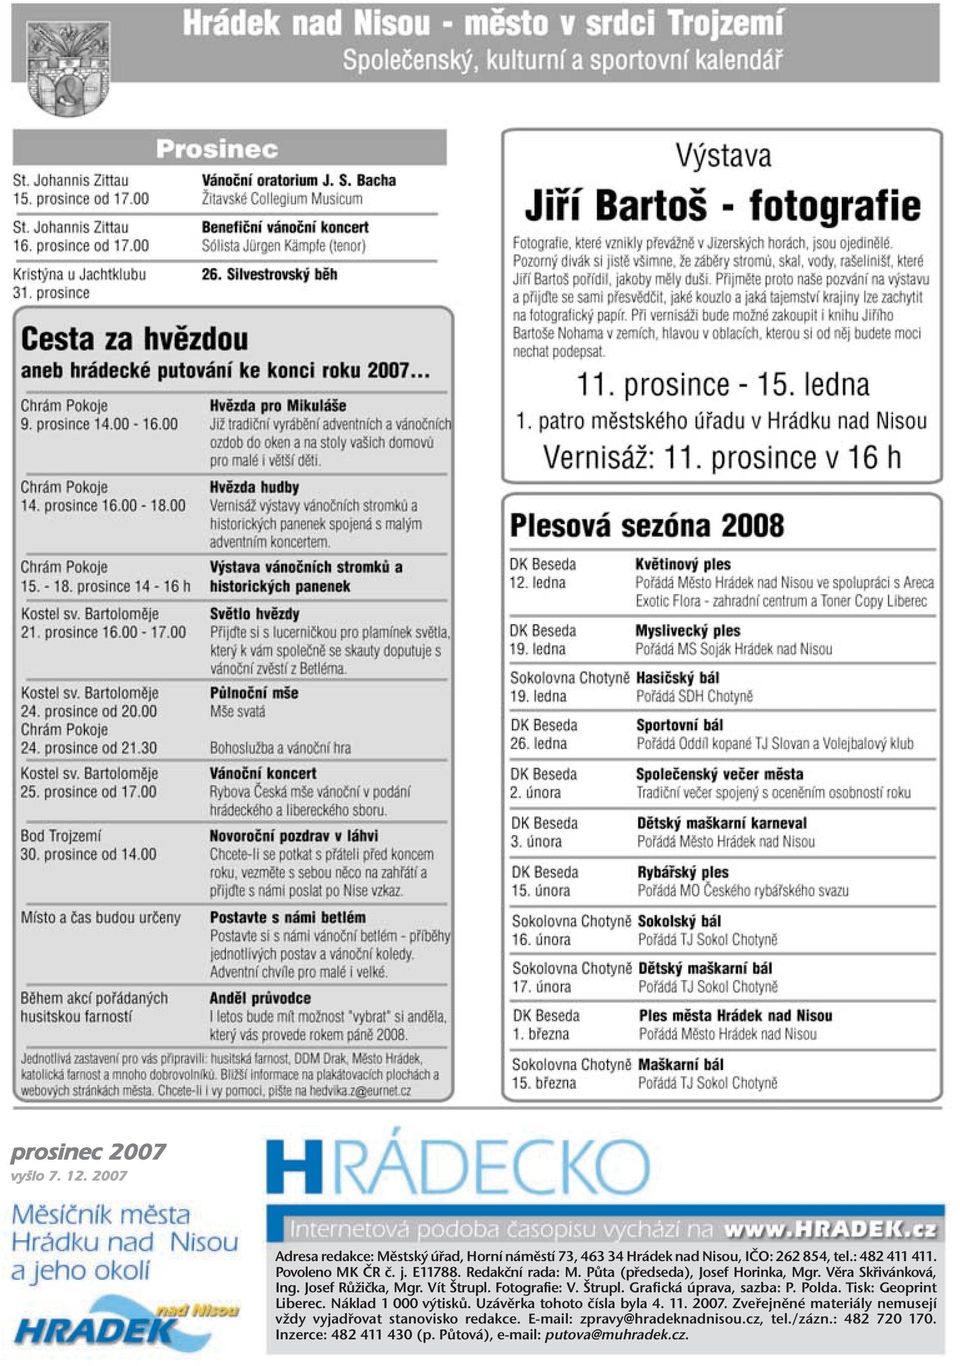 Štrupl. Grafická úprava, sazba: P. Polda. Tisk: Geoprint Liberec. Náklad 1 000 výtisků. Uzávěrka tohoto čísla byla 4. 11. 2007.